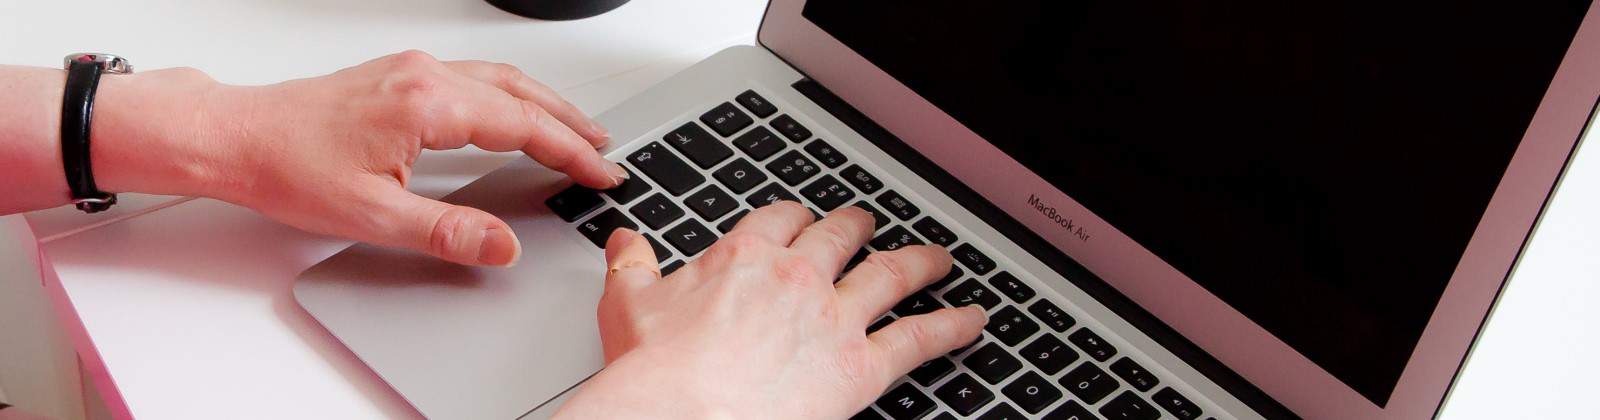 hands on Macbook Air keyboard